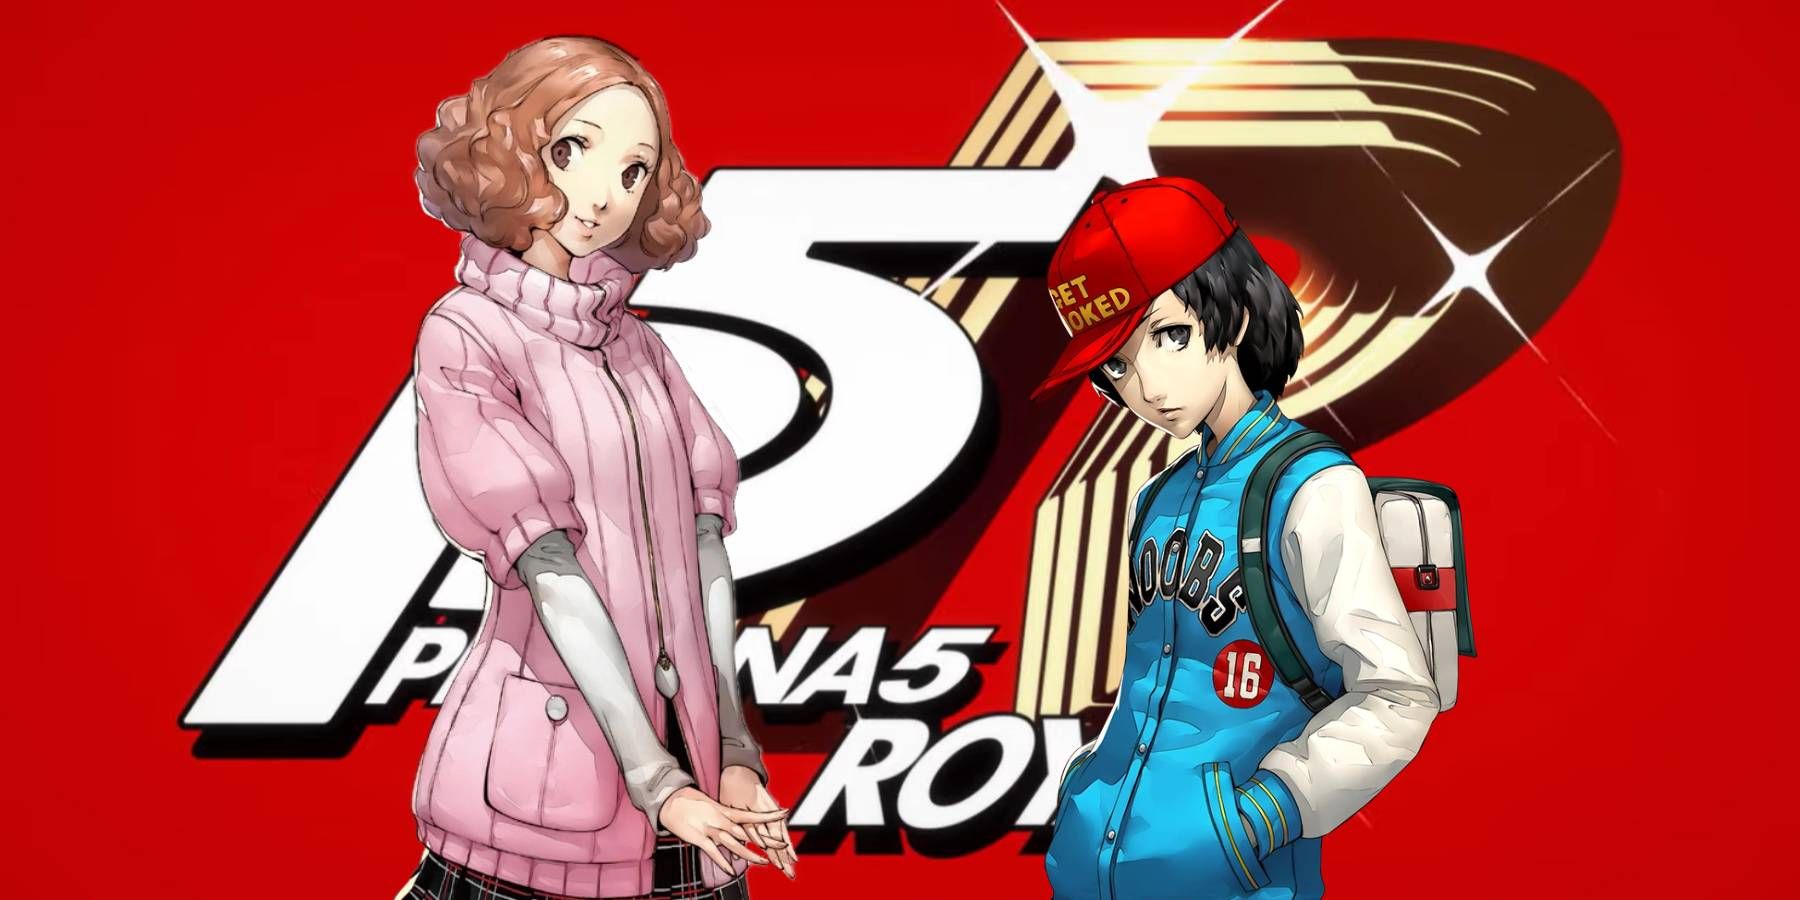 Haru e Shinya em frente ao logotipo do Persona 5 Royal na introdução do jogo.